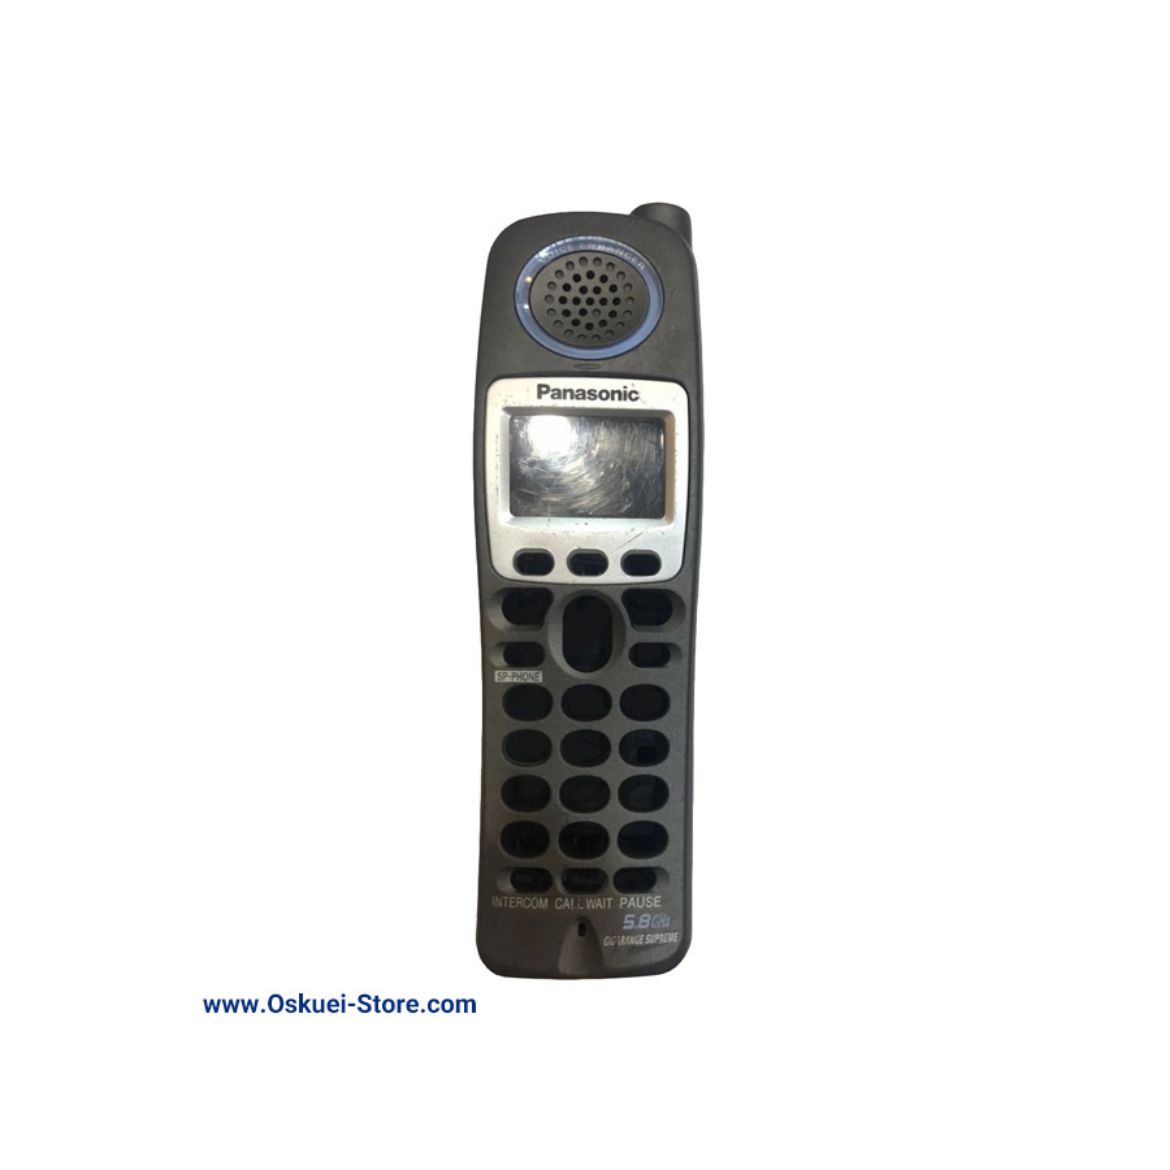 Panasonic KX-TGA650 Cordless Telephone